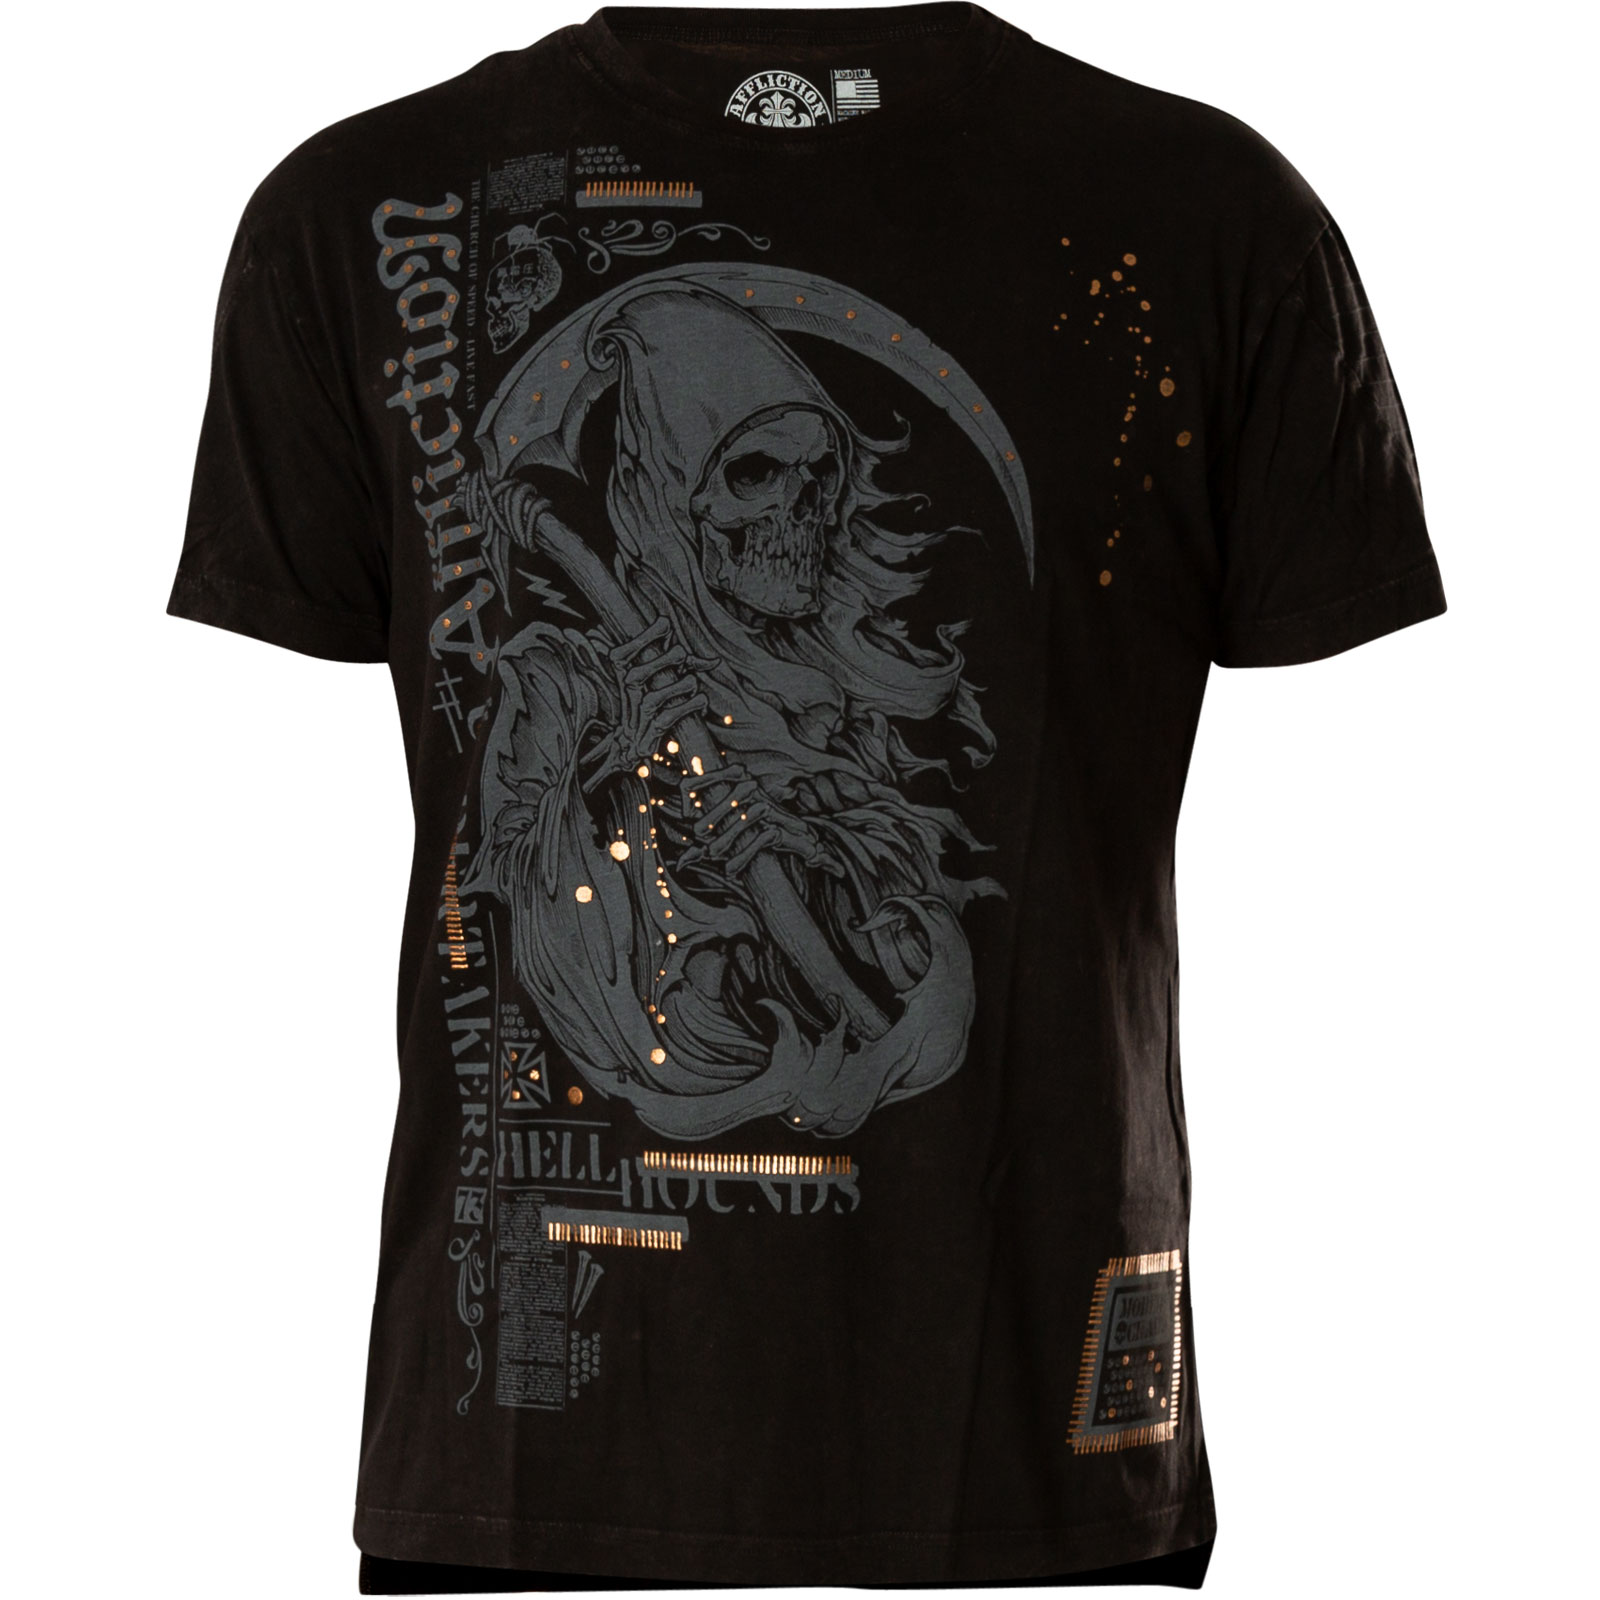 Affliction Modern Chaos T-Shirt Print of a reaper